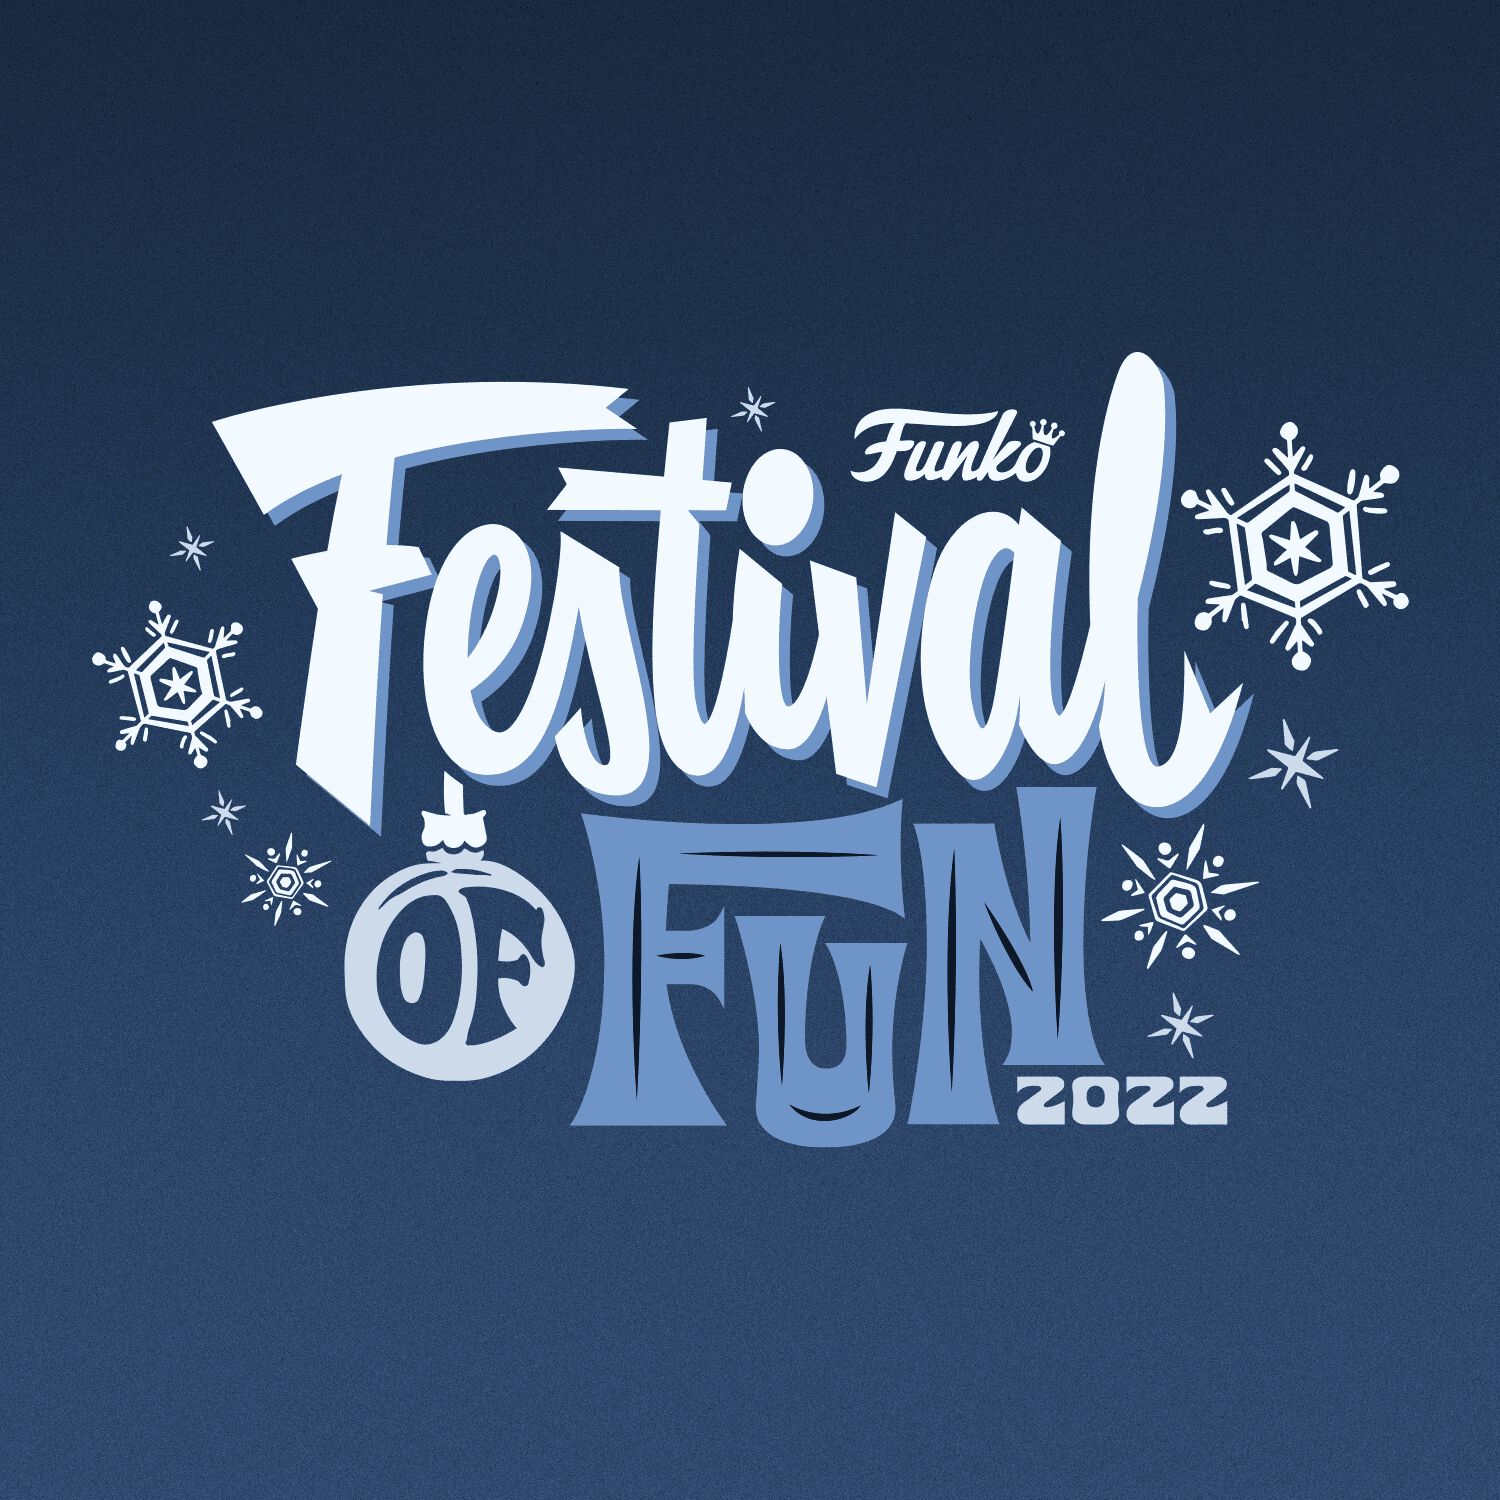 Funko Celebrates Festival of Fun 2022